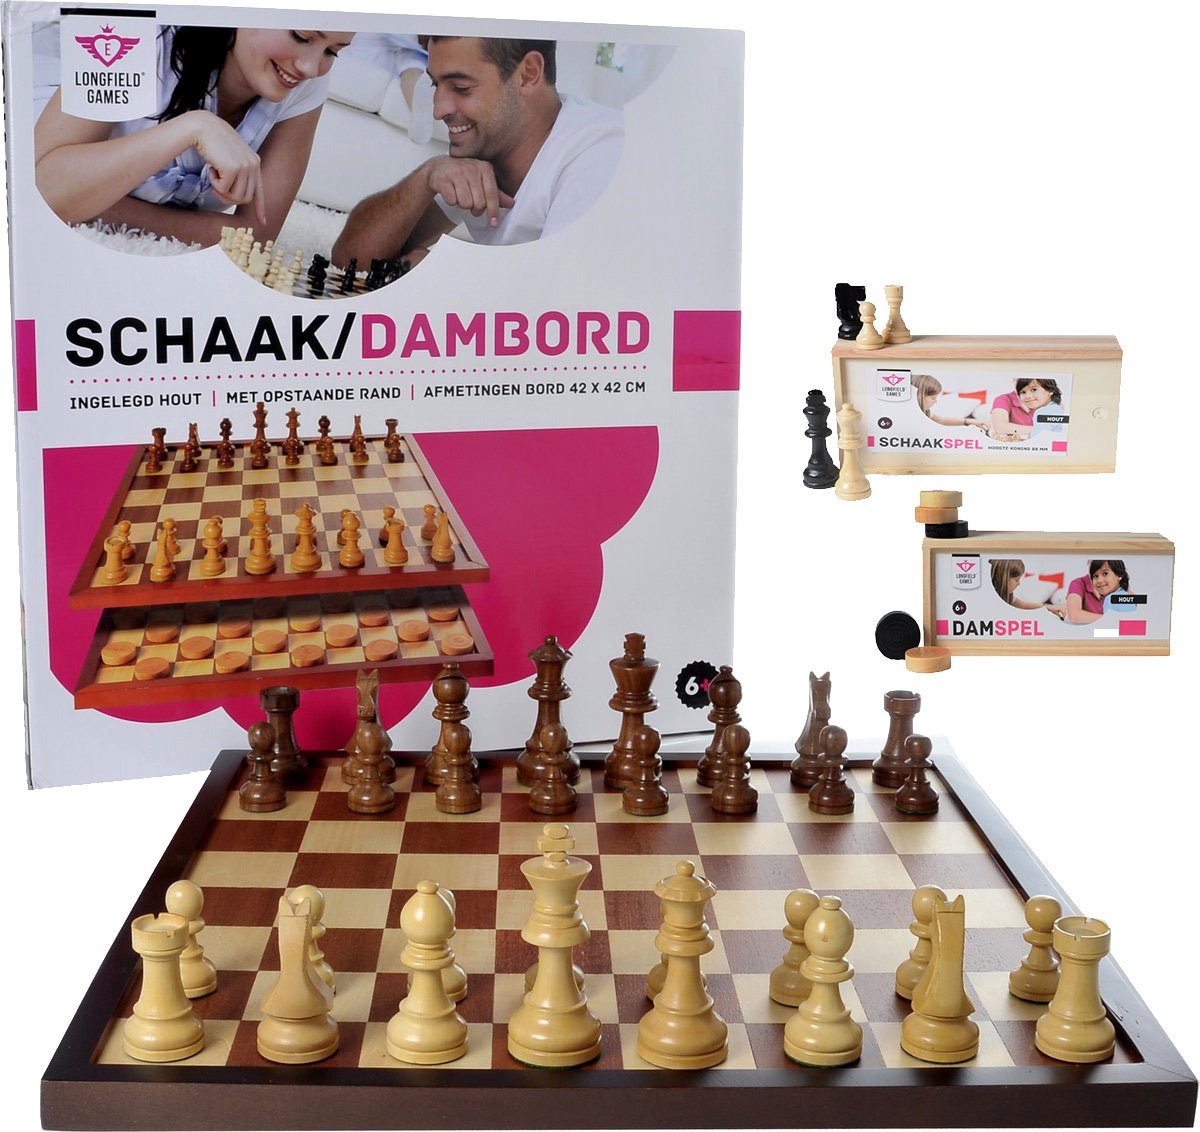 Omleiding Prelude apotheker Luxe schaakbord / dambord 42x42 cm inclusief schaakstukken en damstenen |  Games | bol.com